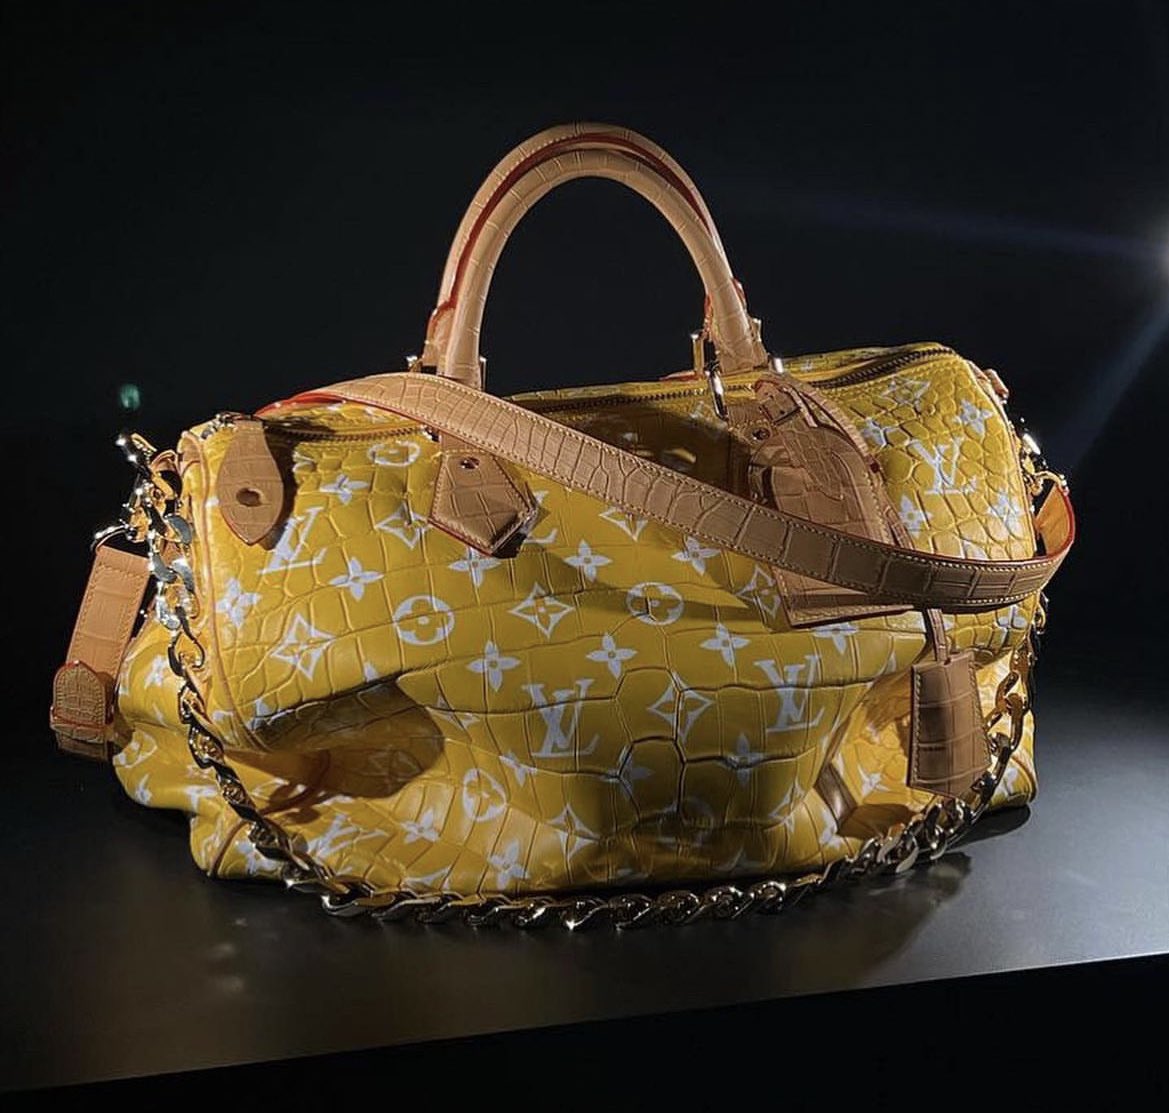 Louis Vuitton vende una bolsa de congelación por más de 3.600 euros